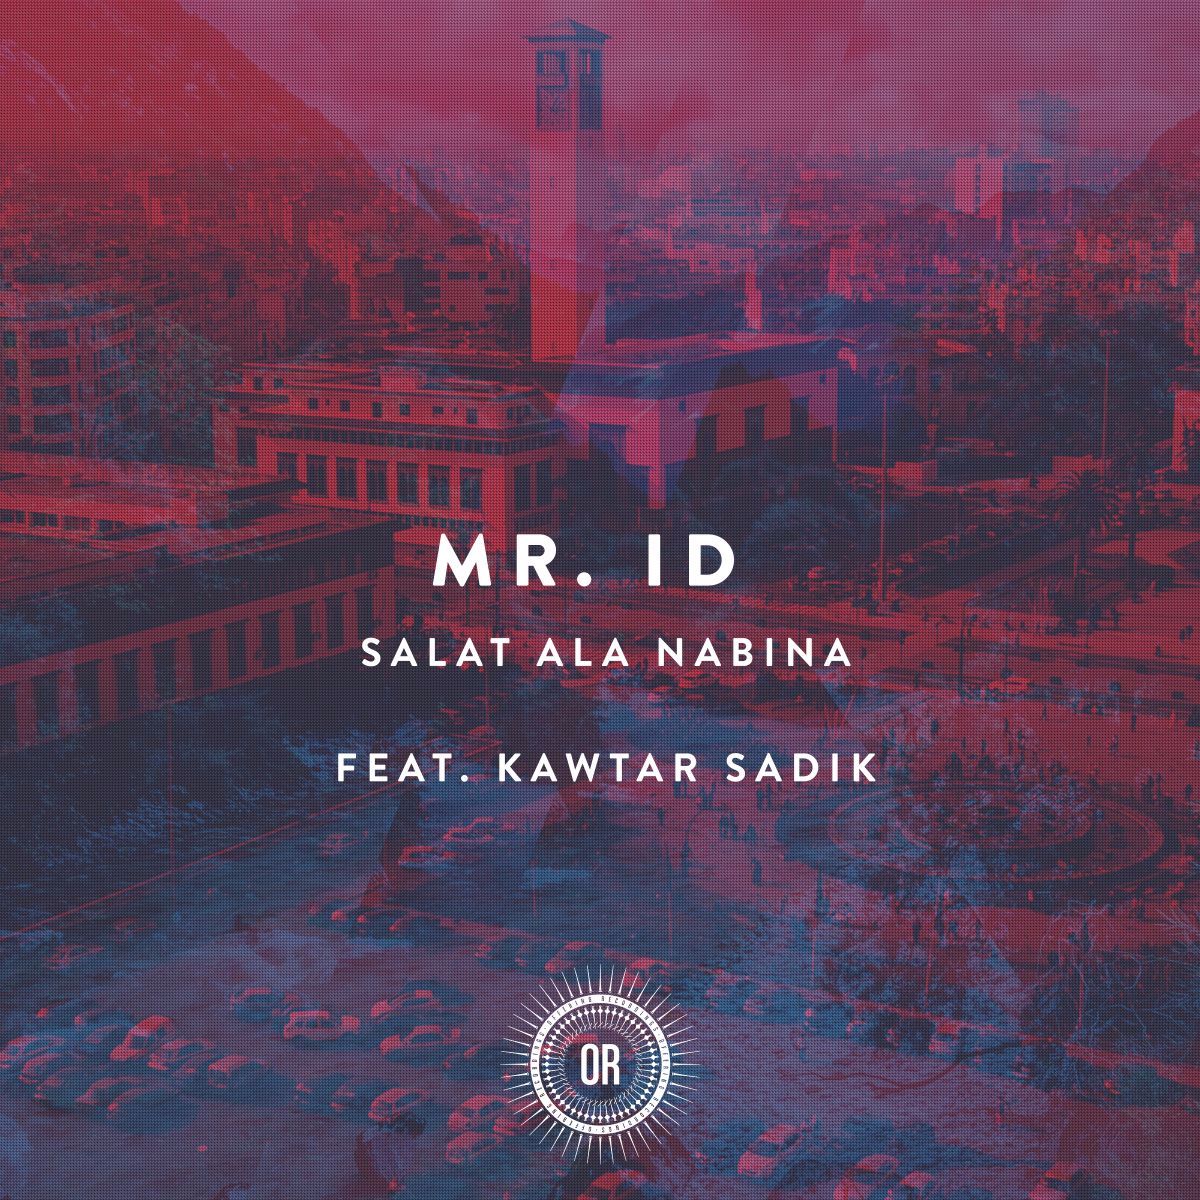 Mr. ID feat. Kawtar Sadik - Salat Ala Nabina (Main Mix) (STW Premiere)